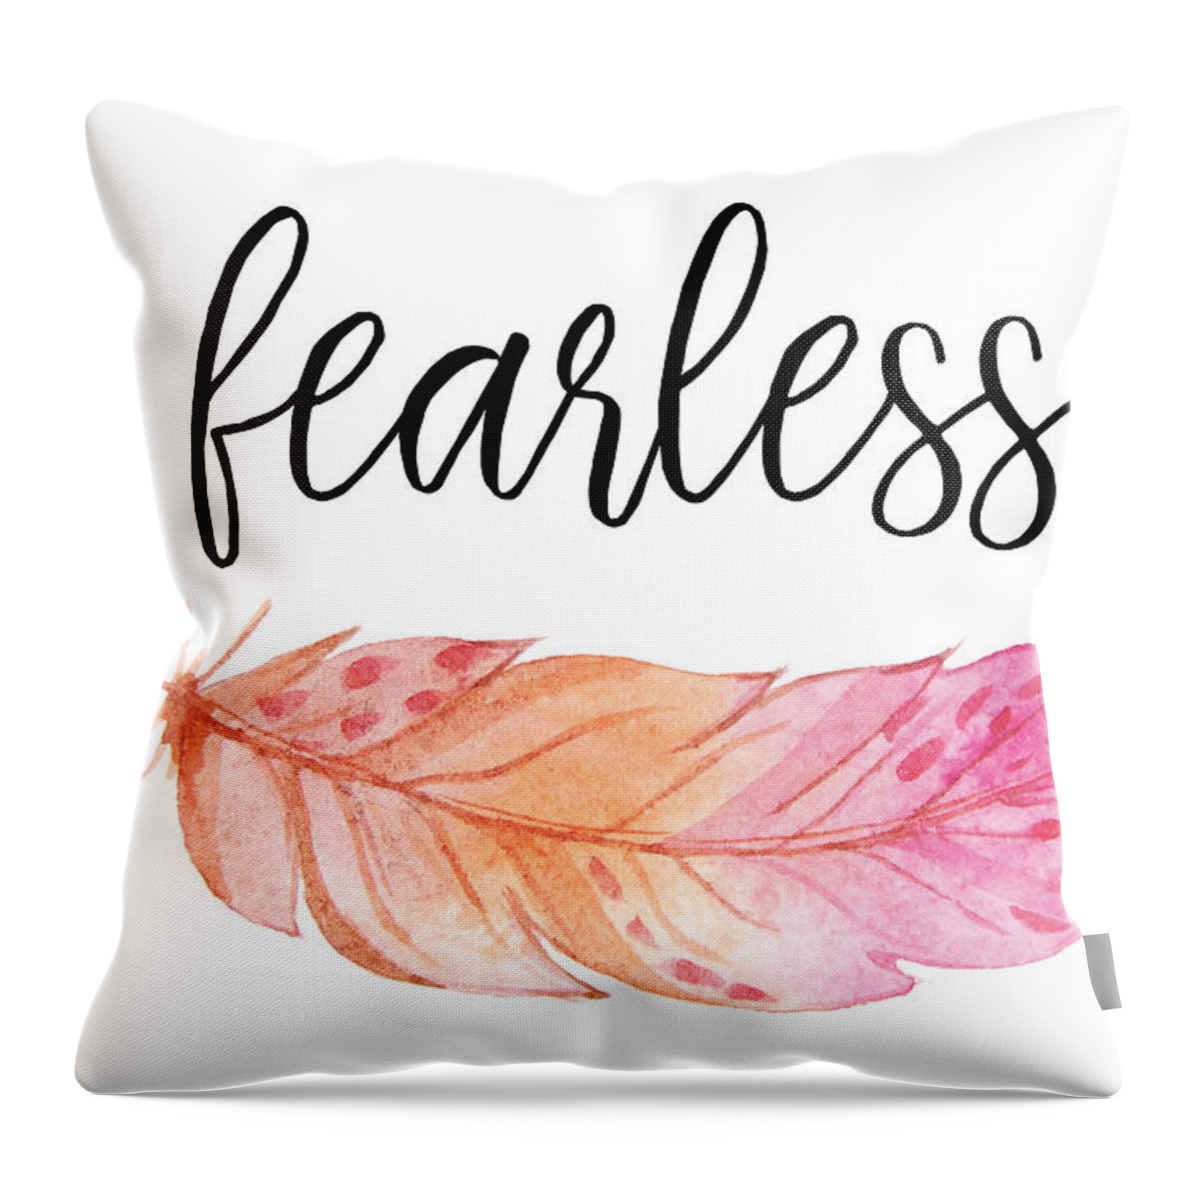 Fearless Throw Pillow featuring the digital art Fearless #2 by Jaime Friedman